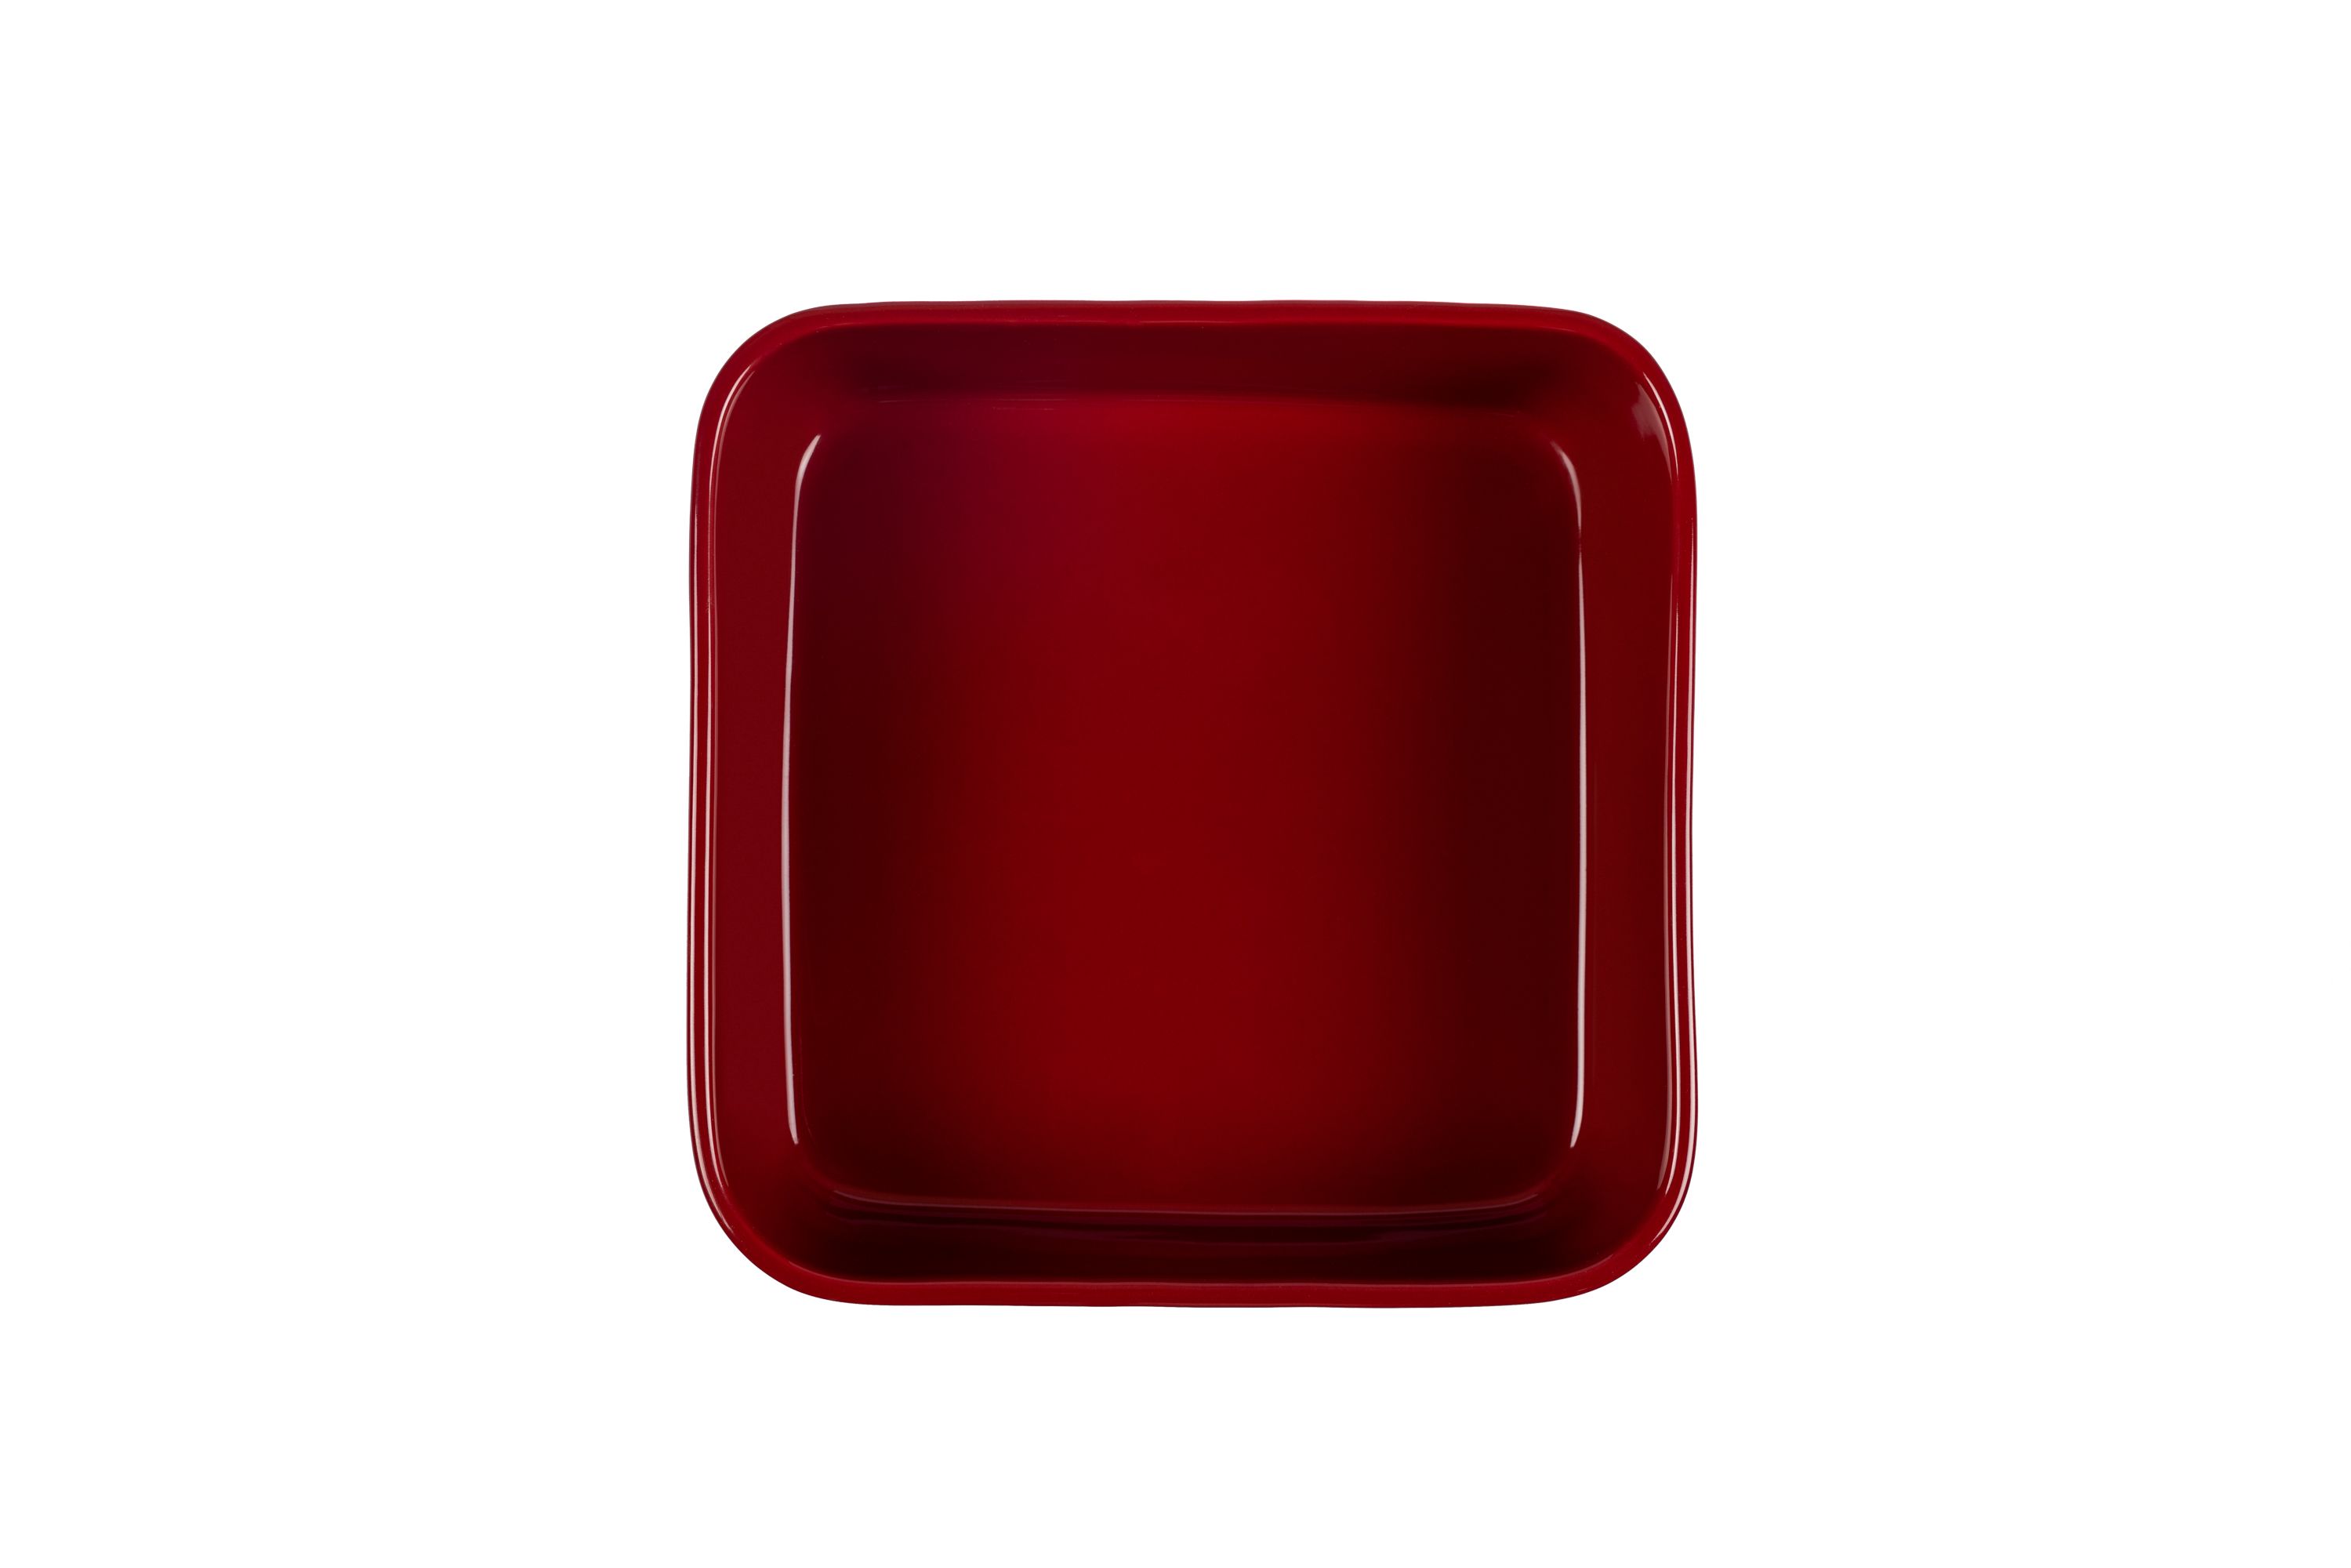 Blick von oben auf die rote Stoneware-Ofenform